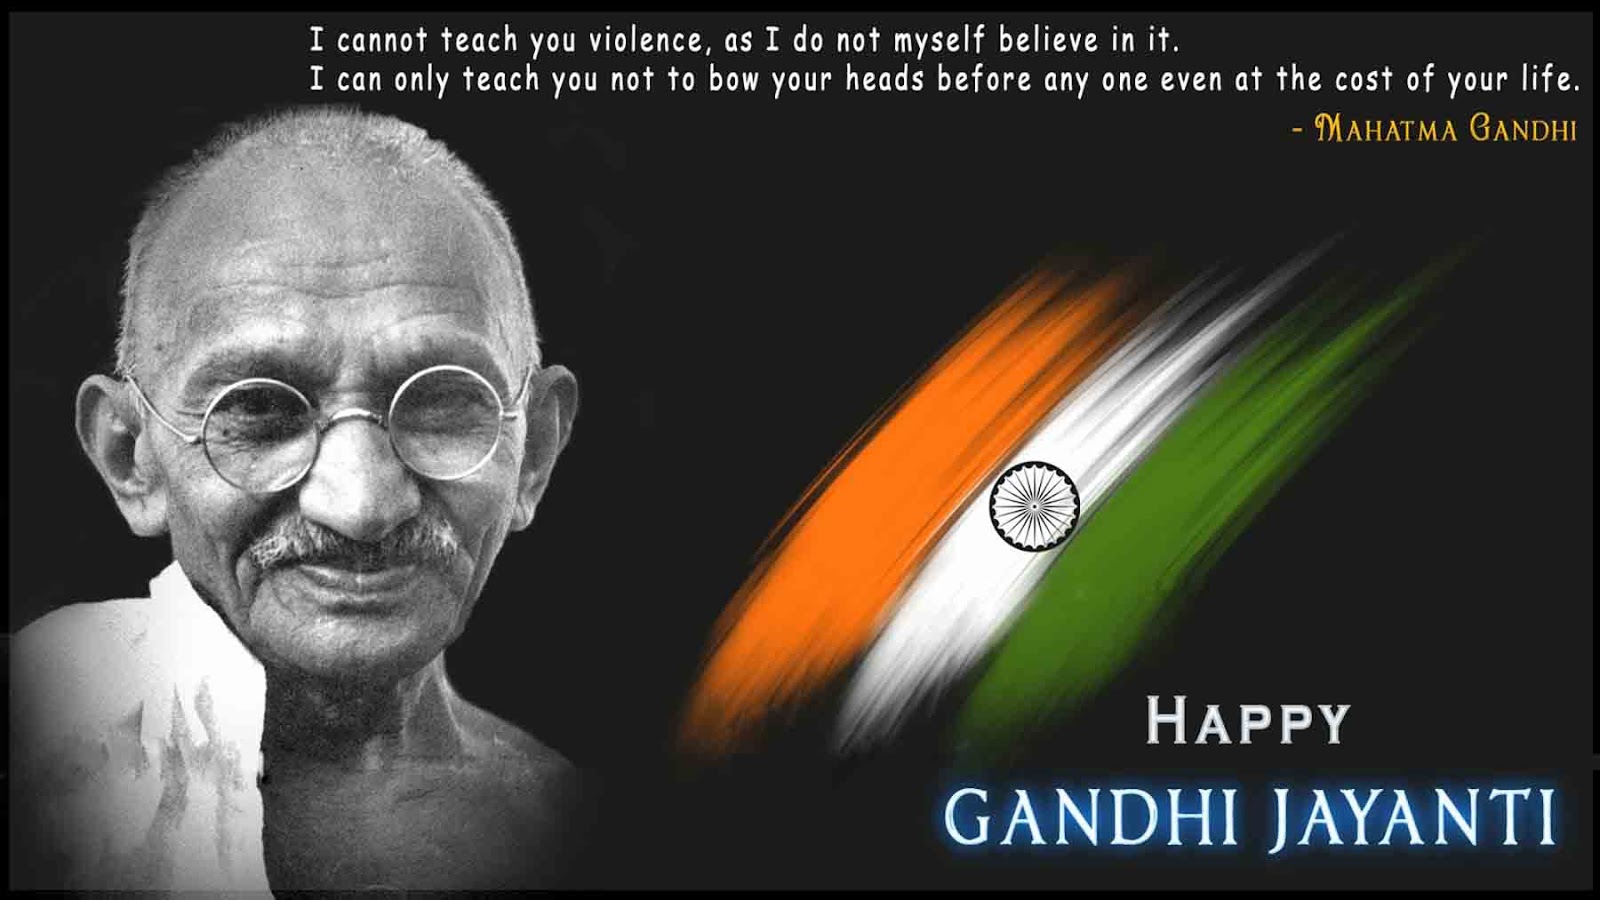 Short Paragraph on Gandhi Jayanti (2nd October, Mahatma Gandhi’s Birthday)